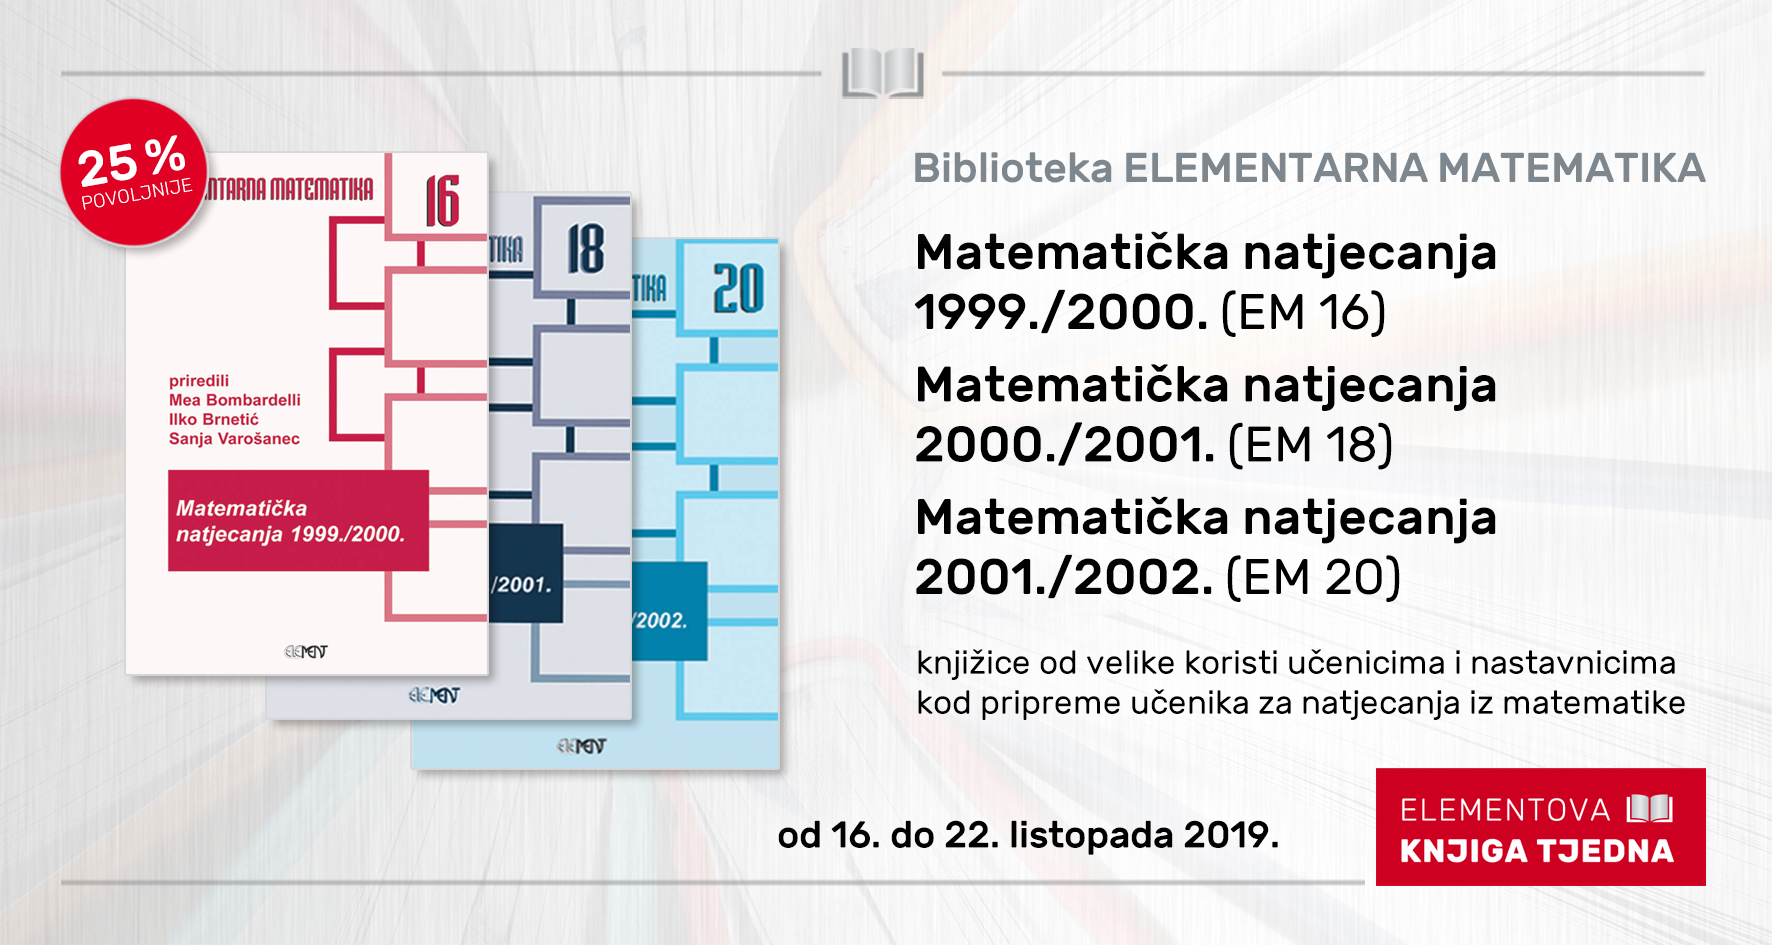 Matematička natjecanja 2000./2001. (EM 18)